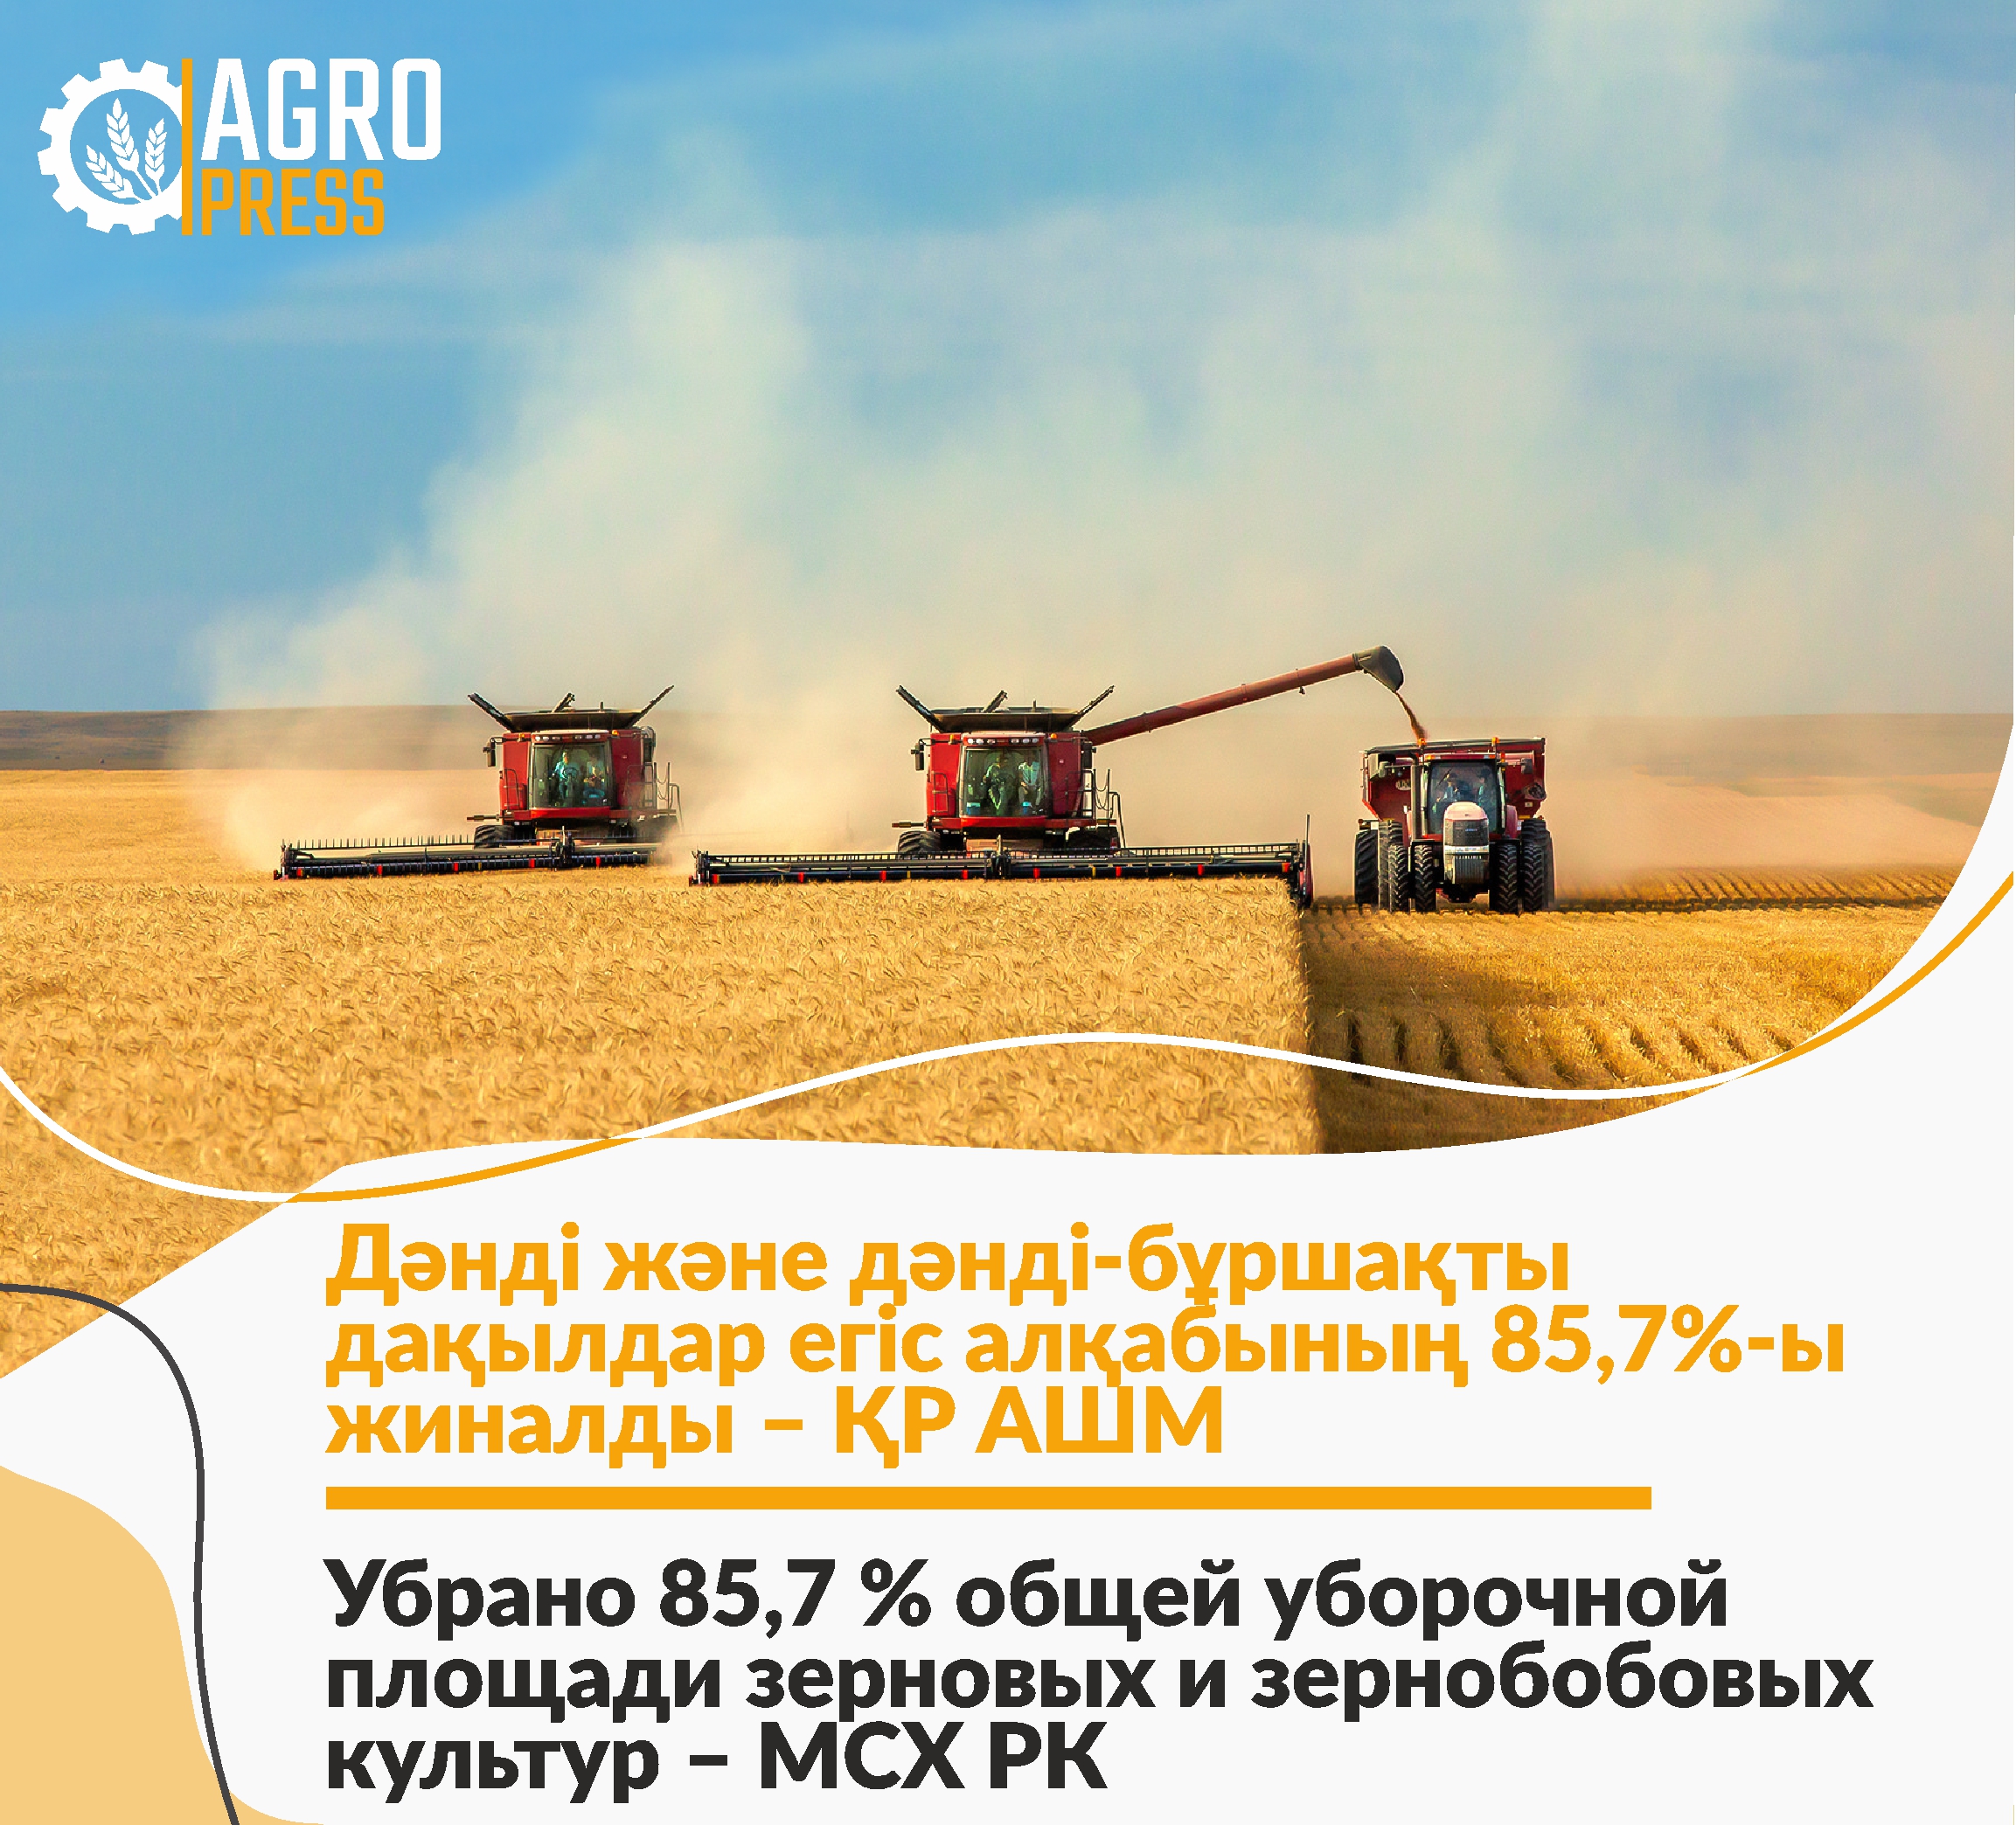 Убрано 85,7 % общей уборочной площади зерновых и зернобобовых культур – МСХ РК